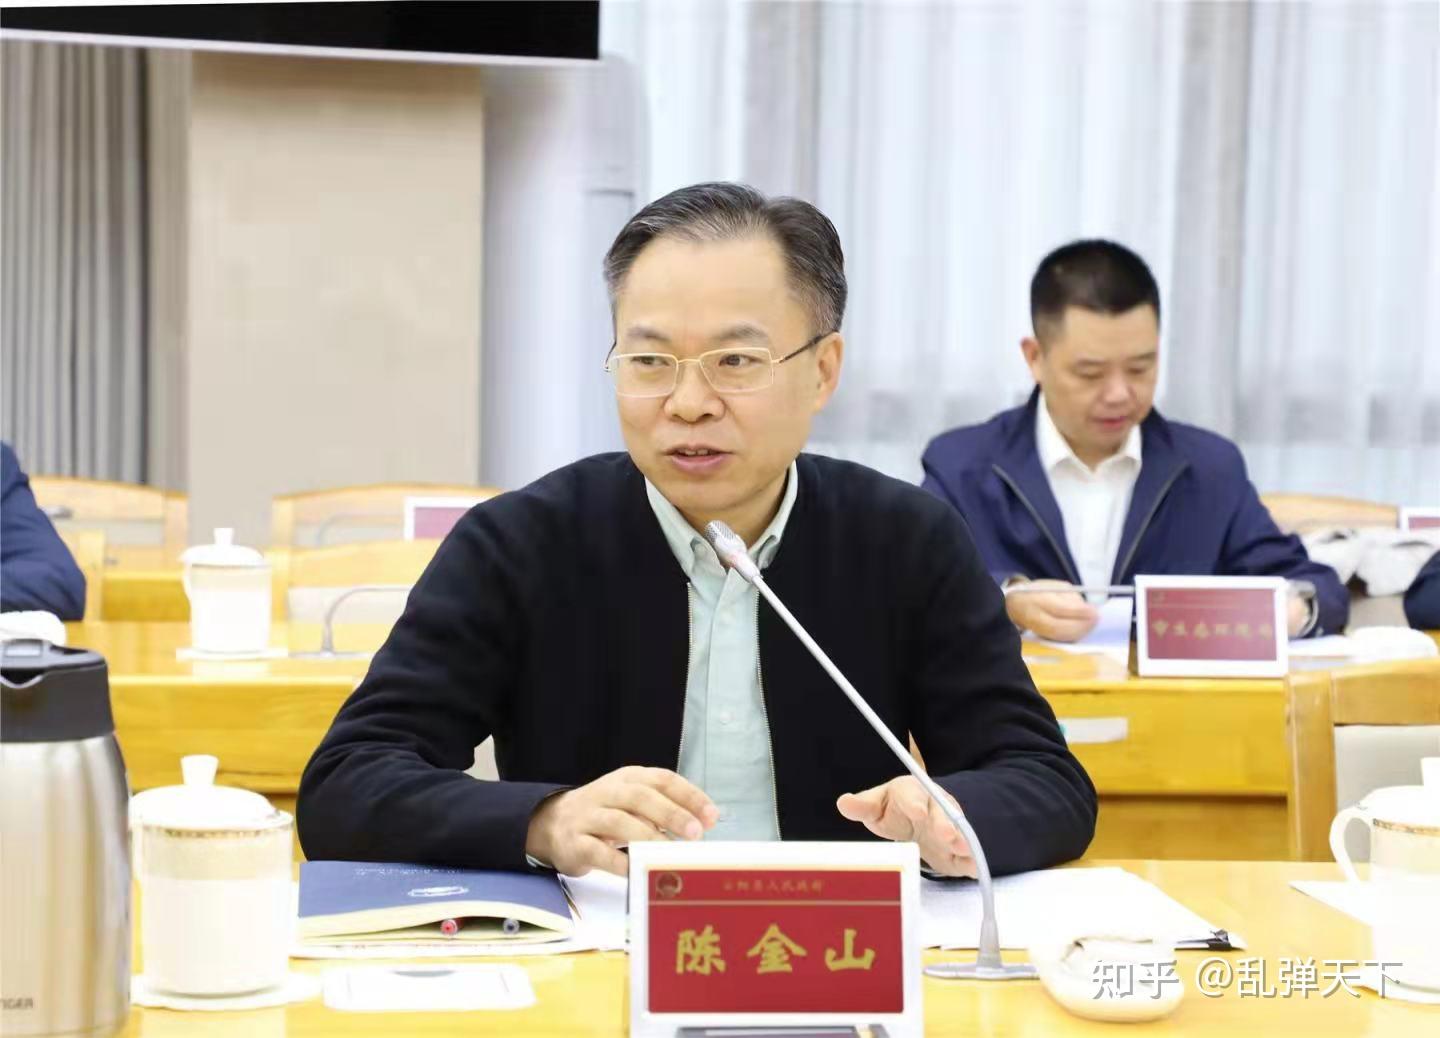 重庆市原副市长熊雪被开除党籍 33岁成为副区长 被指“对配偶不管不教”_中共中央_严重_违纪